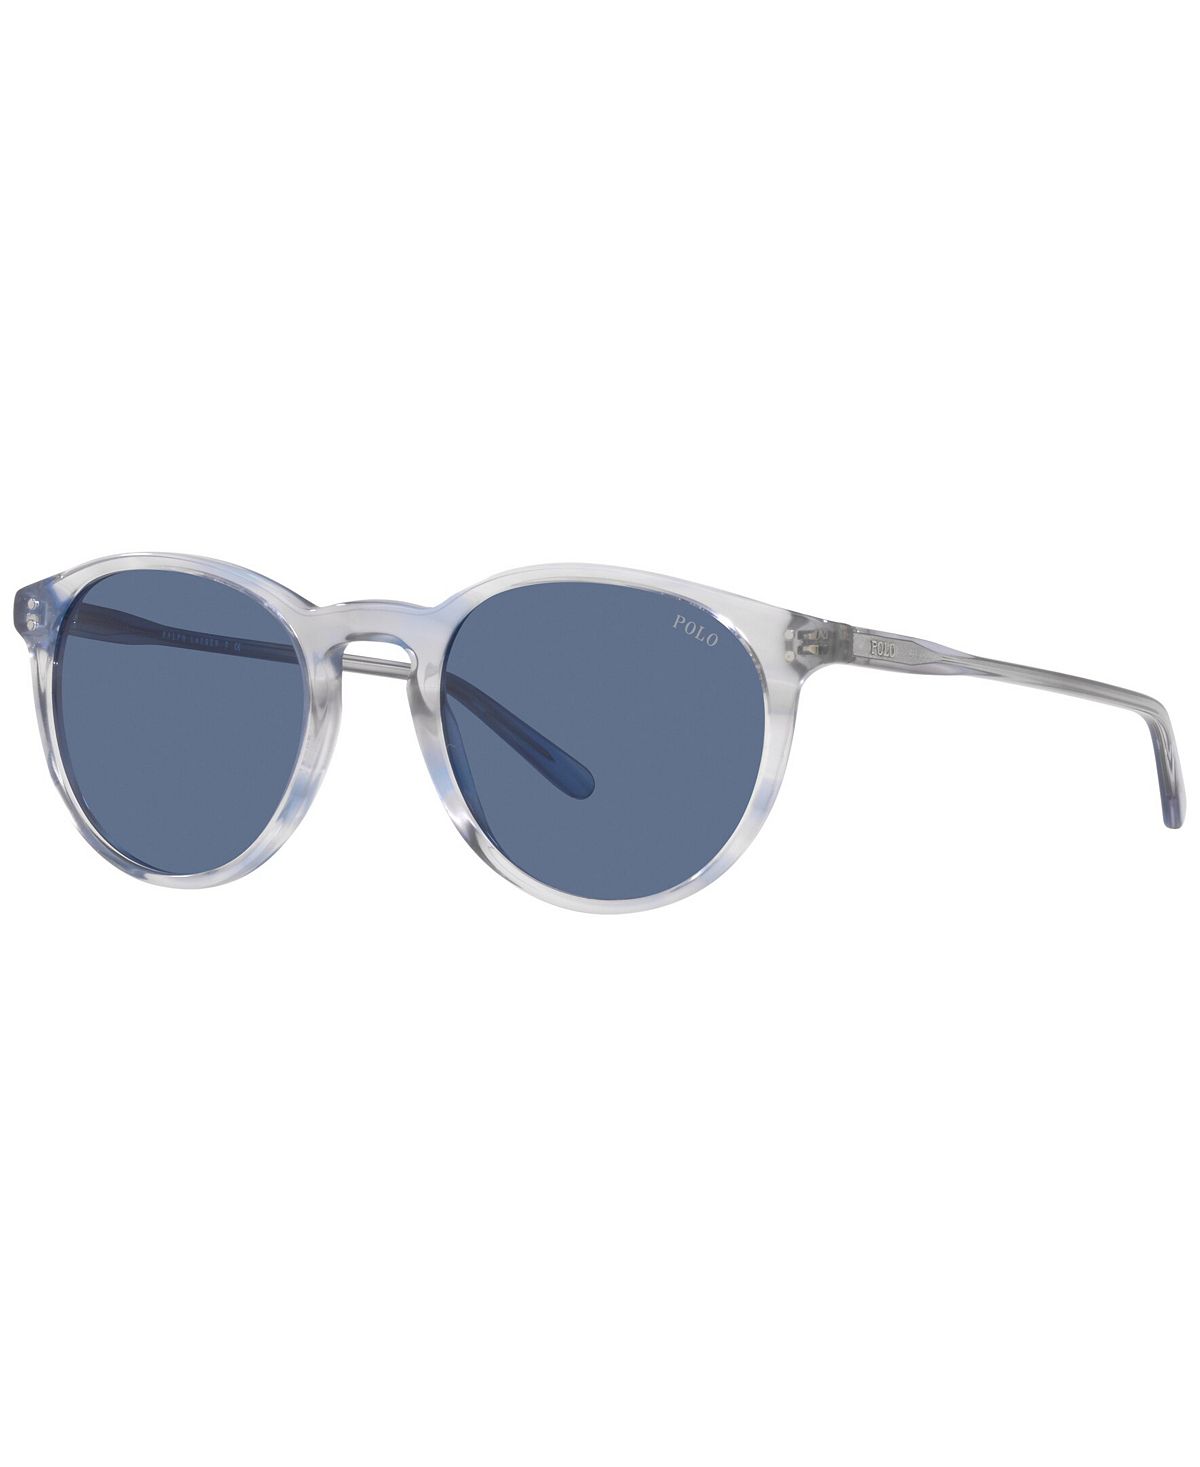 Мужские солнцезащитные очки, 50 Polo Ralph Lauren мужские солнцезащитные очки ph4172 50 polo ralph lauren